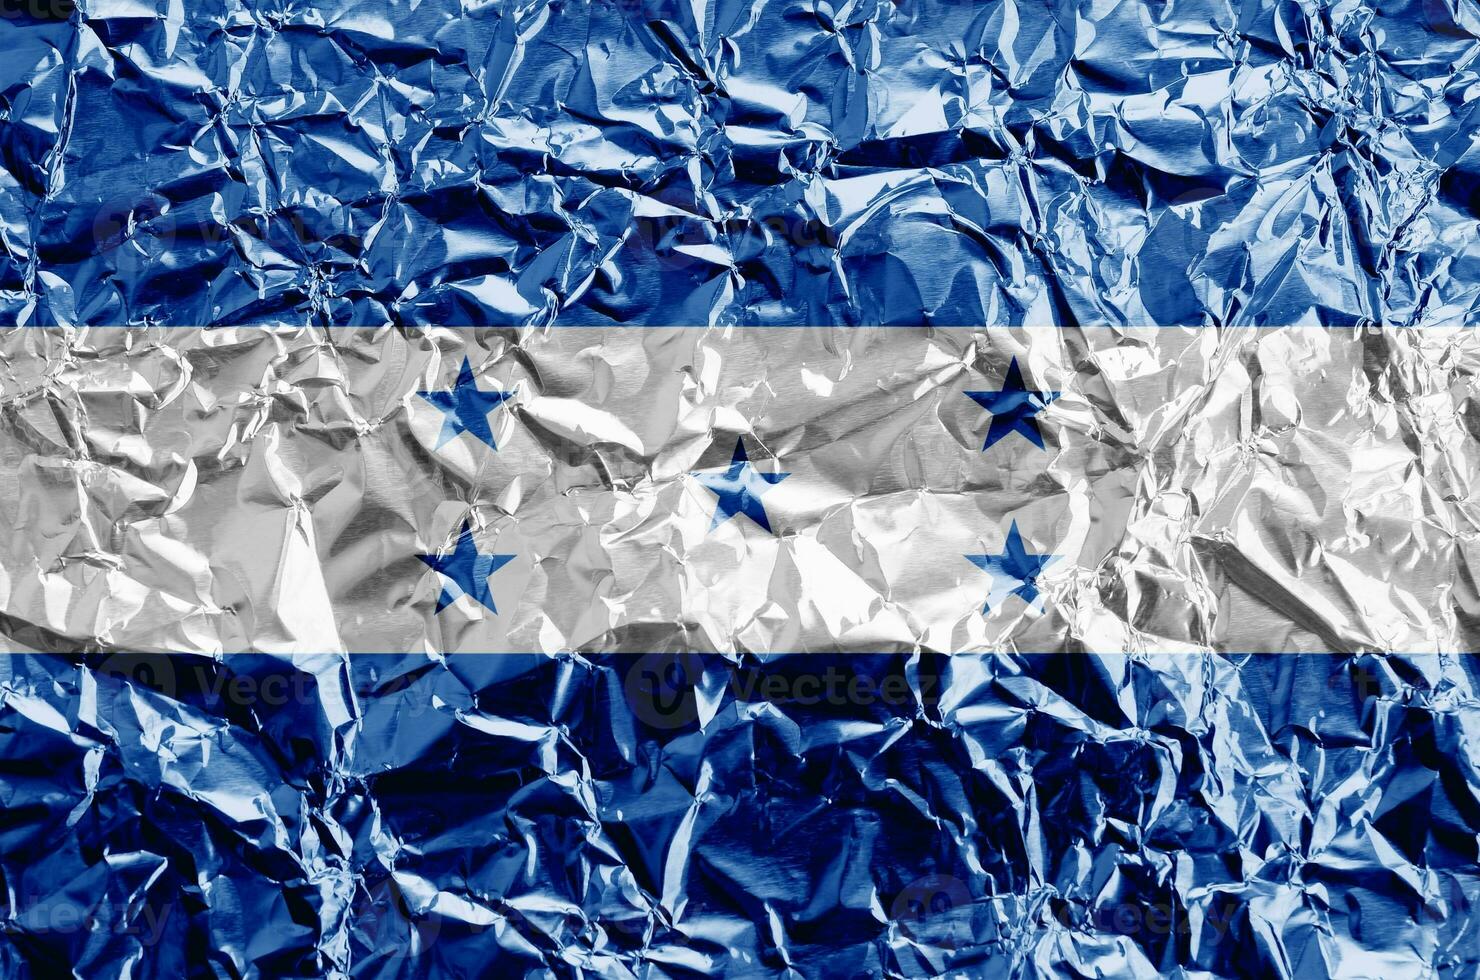 honduras flagga avbildad i måla färger på skinande skrynkliga aluminium folie närbild. texturerad baner på grov bakgrund foto